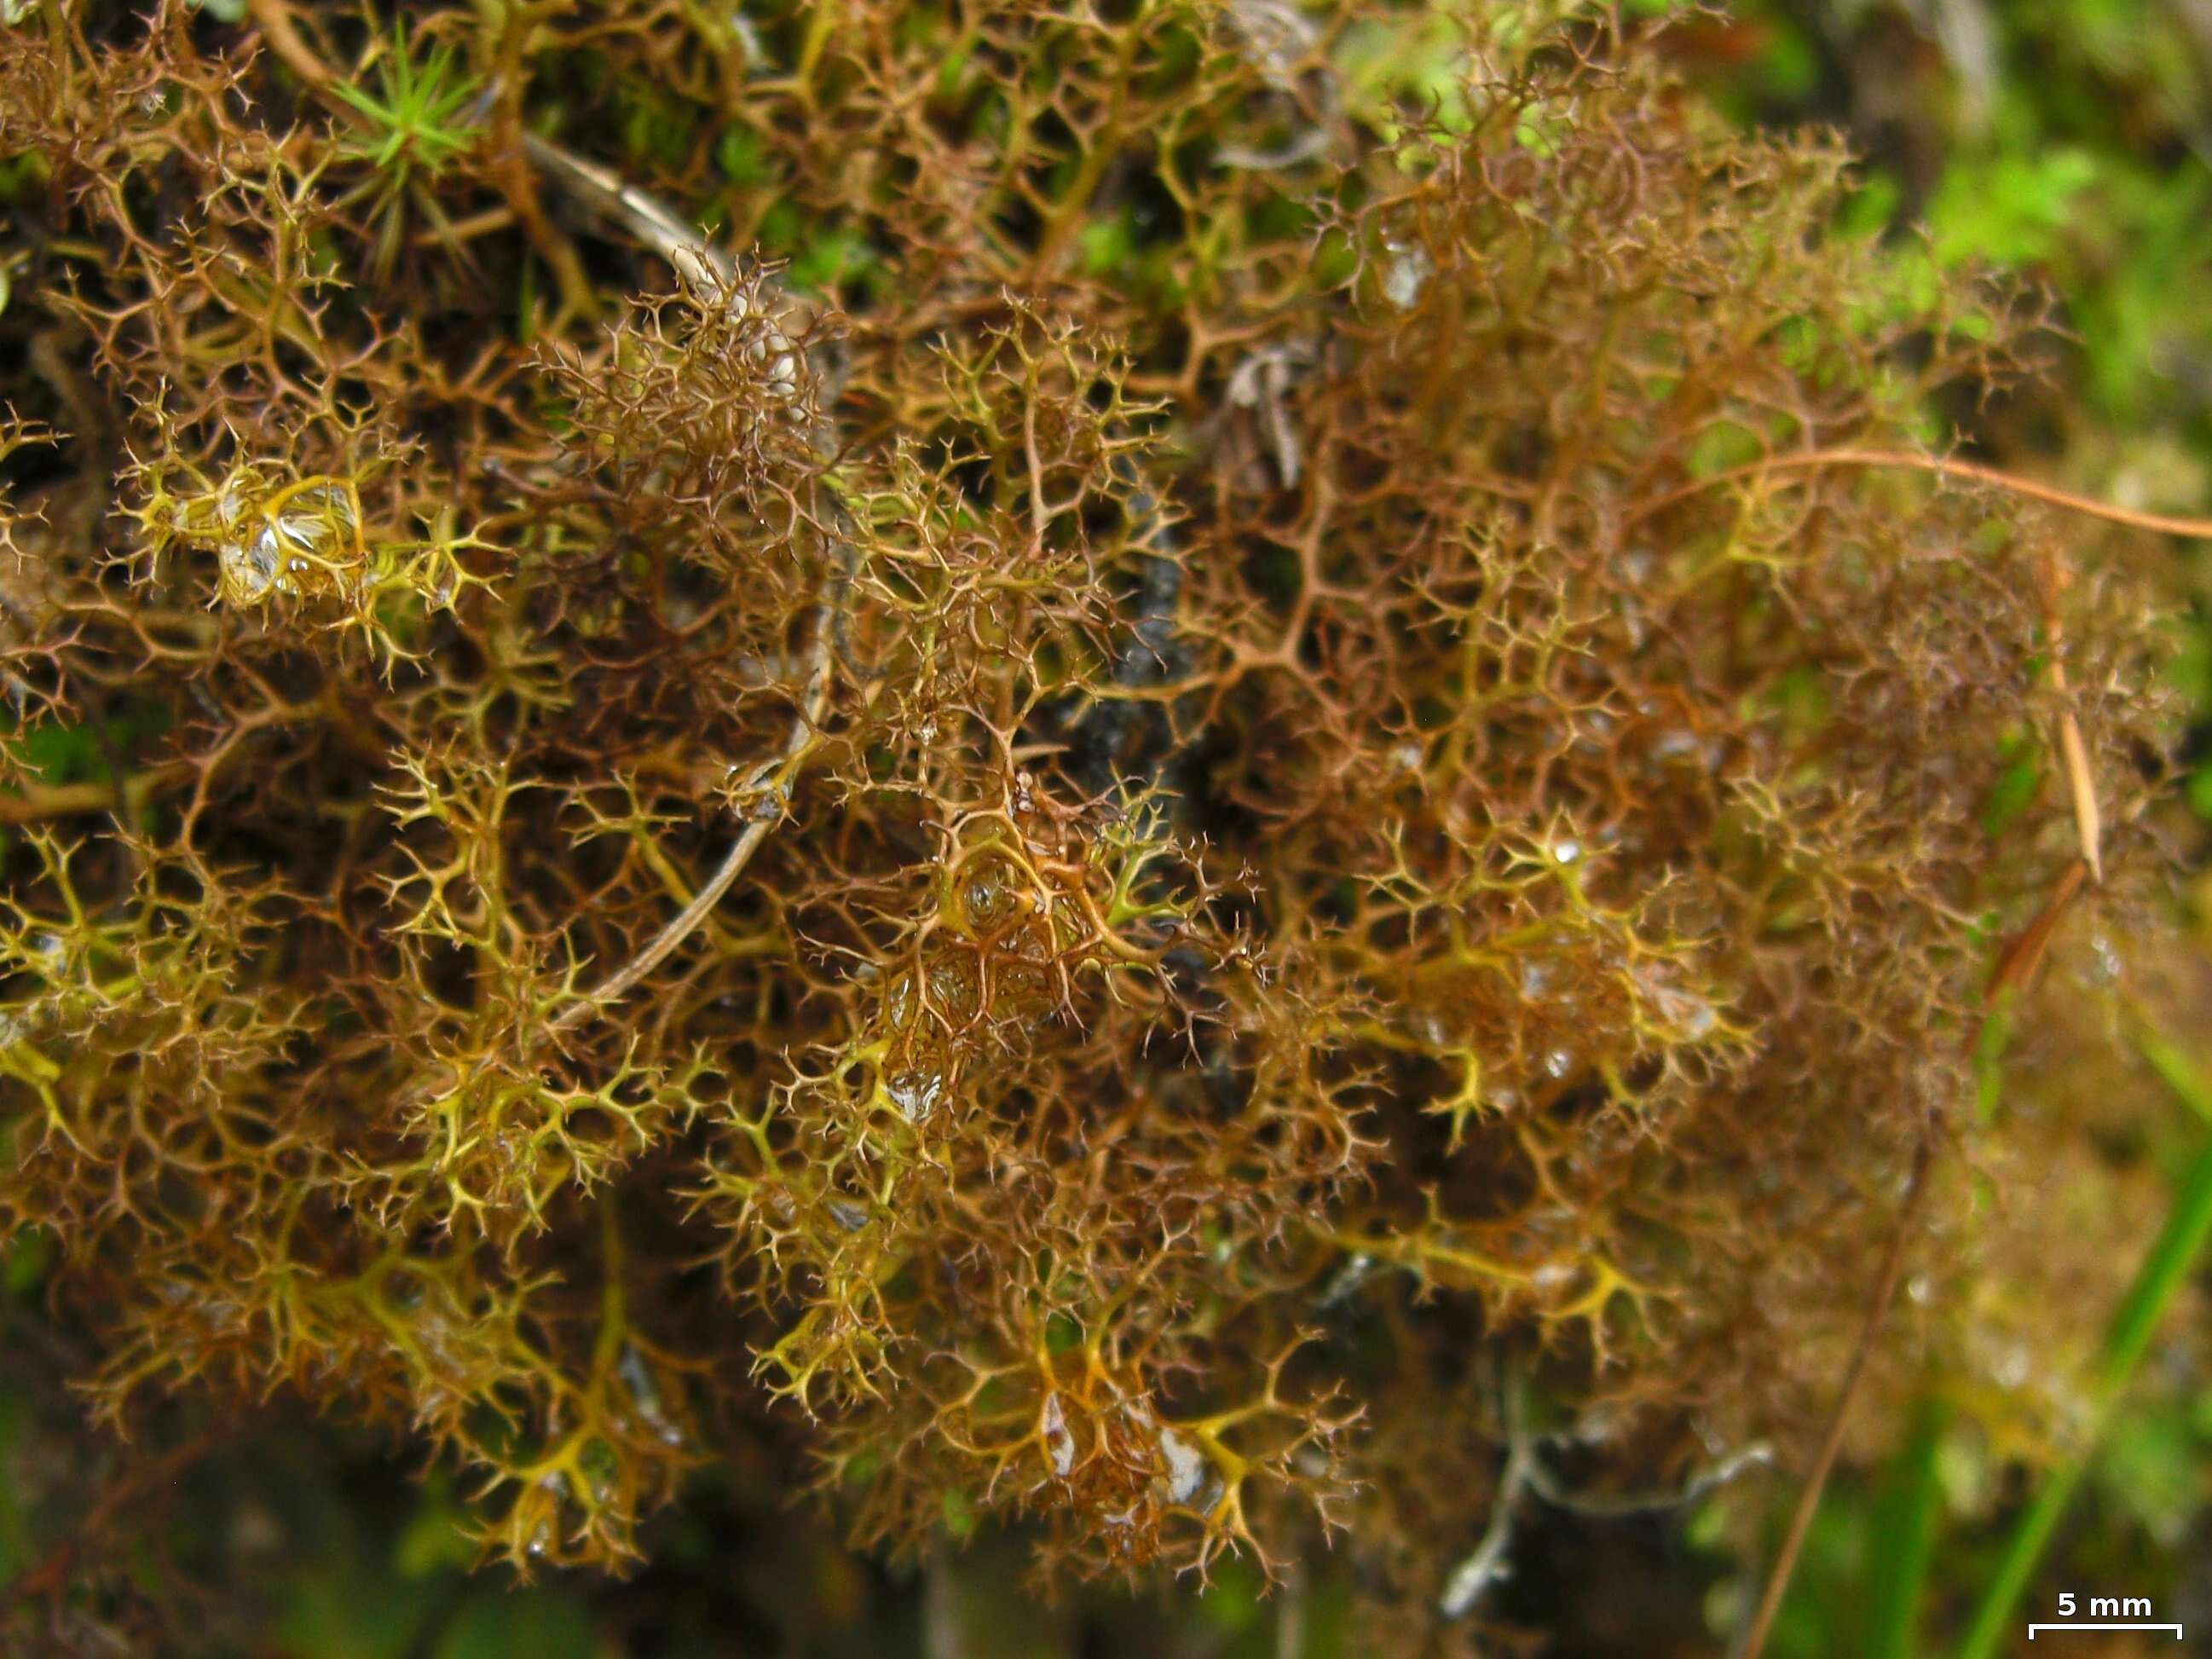 Image of Bryocaulon lichens